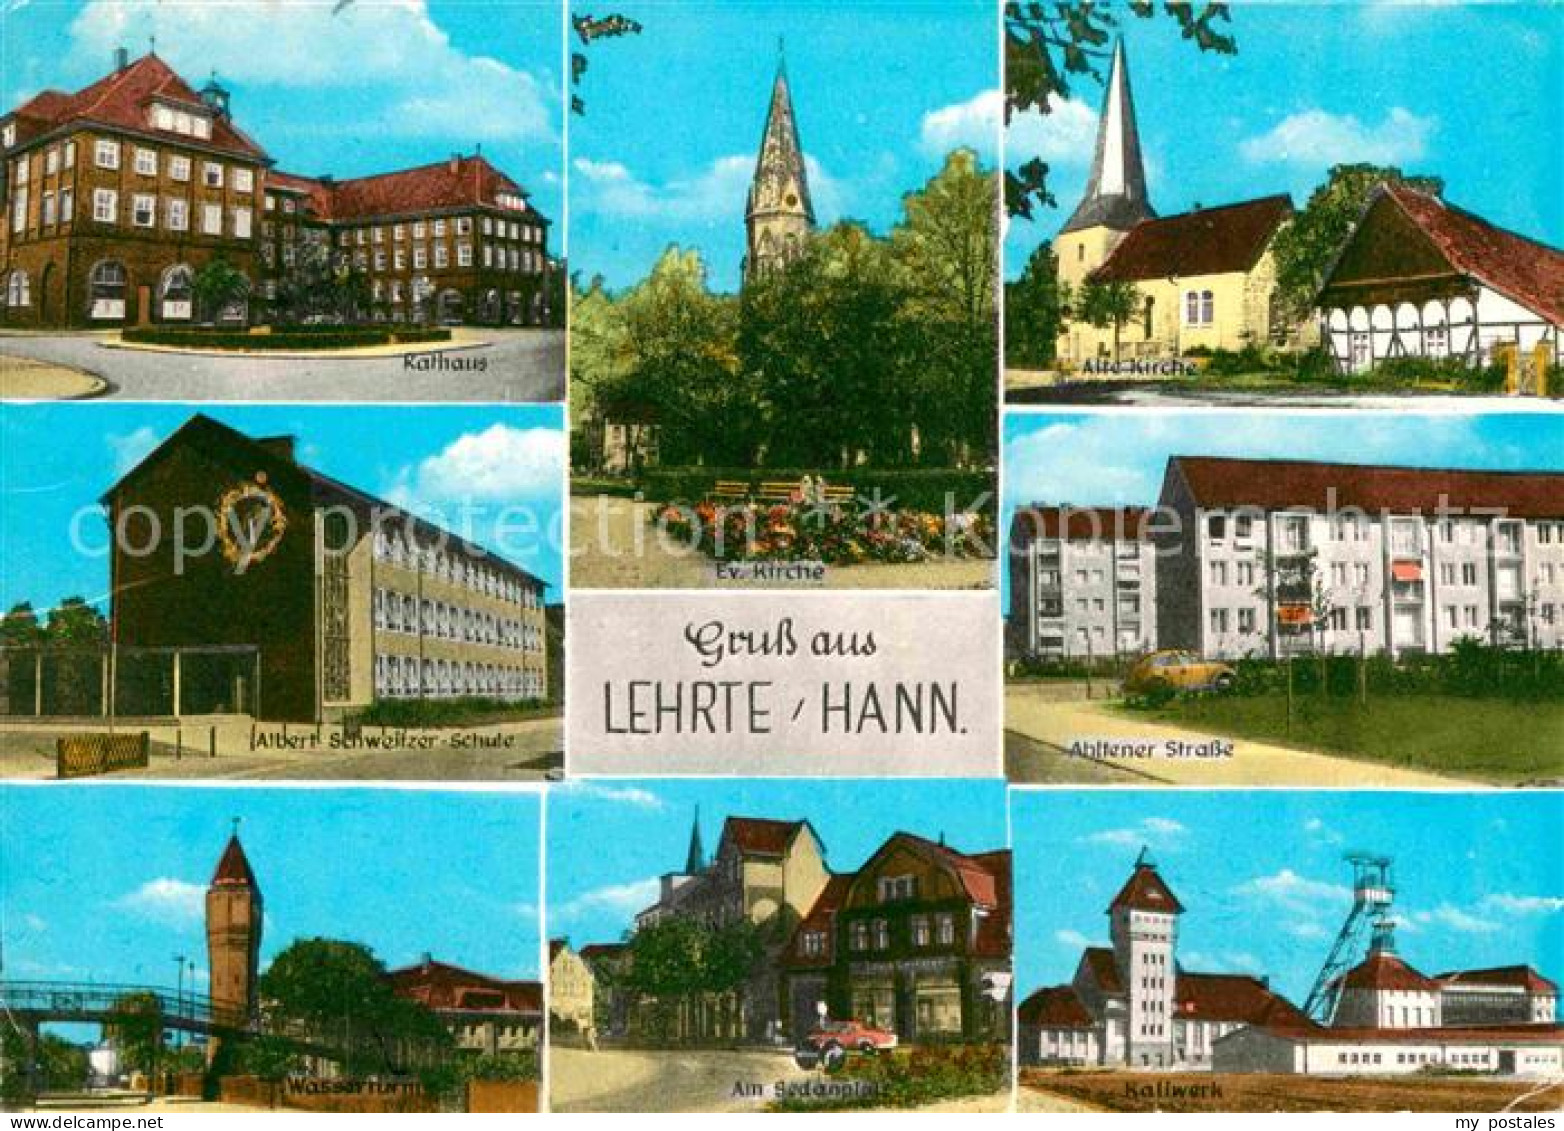 72620373 Lehrte Hannover Wasserturm Kaliwerk Ahltener-Strase Lehrte - Lehrte